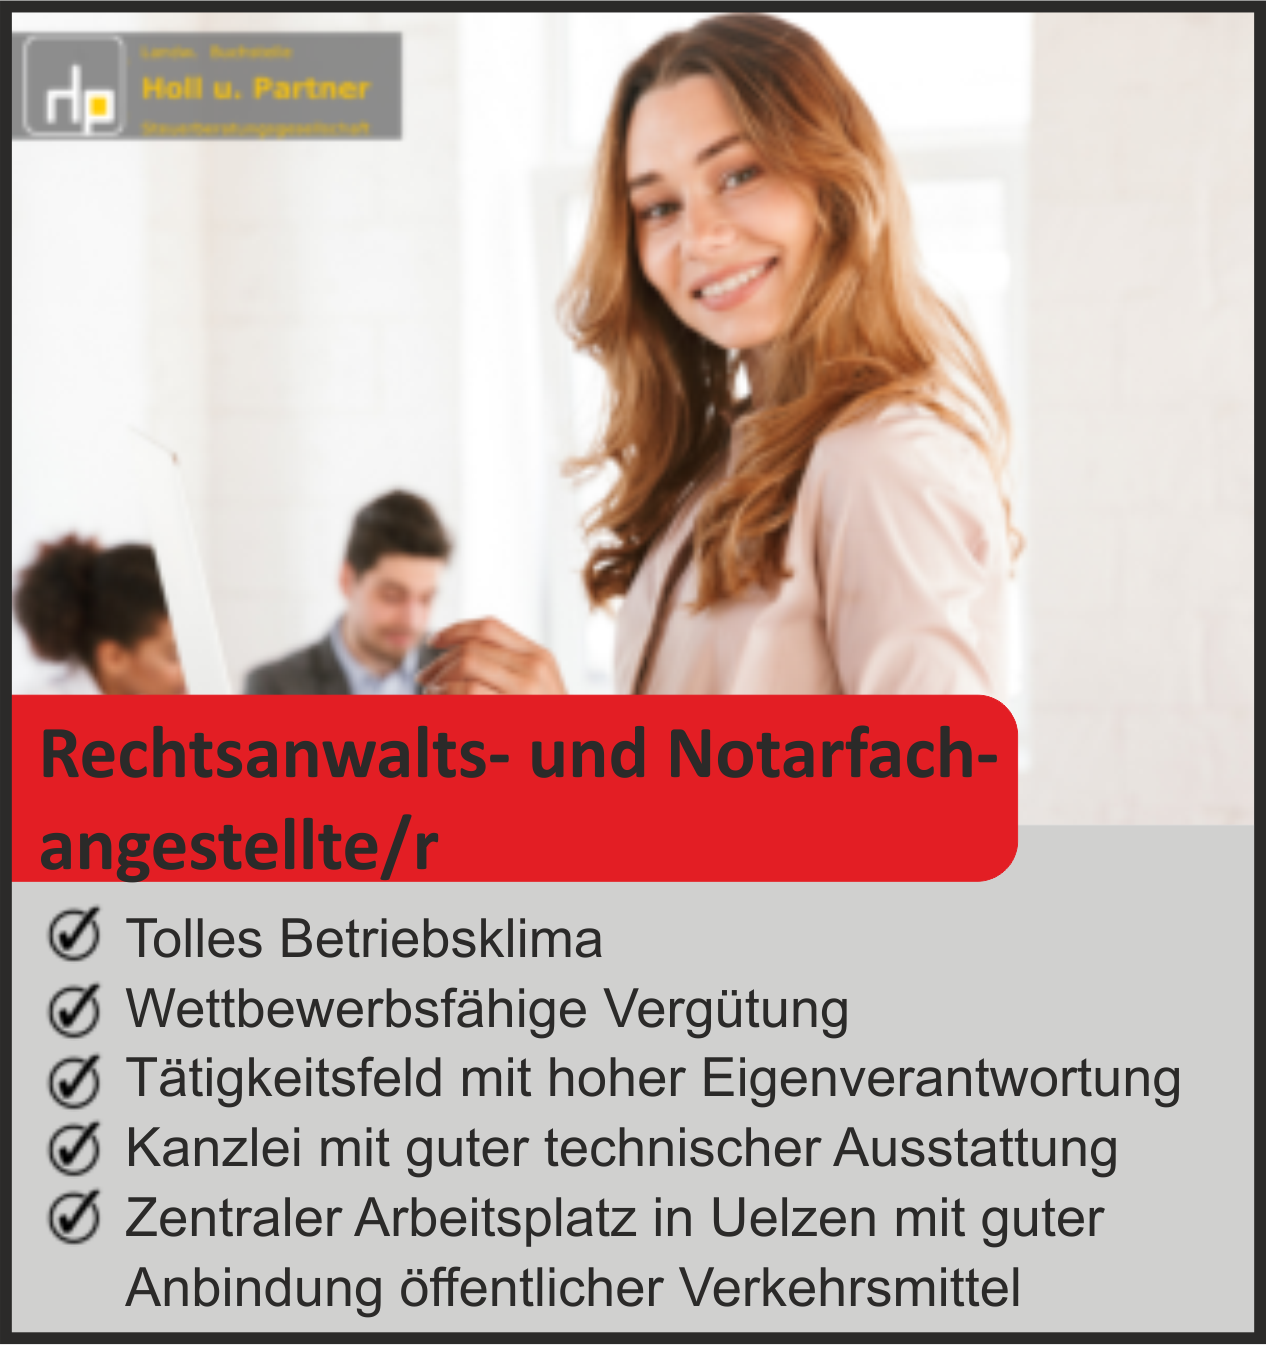 Dieter Holl _ Partner Steuerberatungsgesellschaft 3